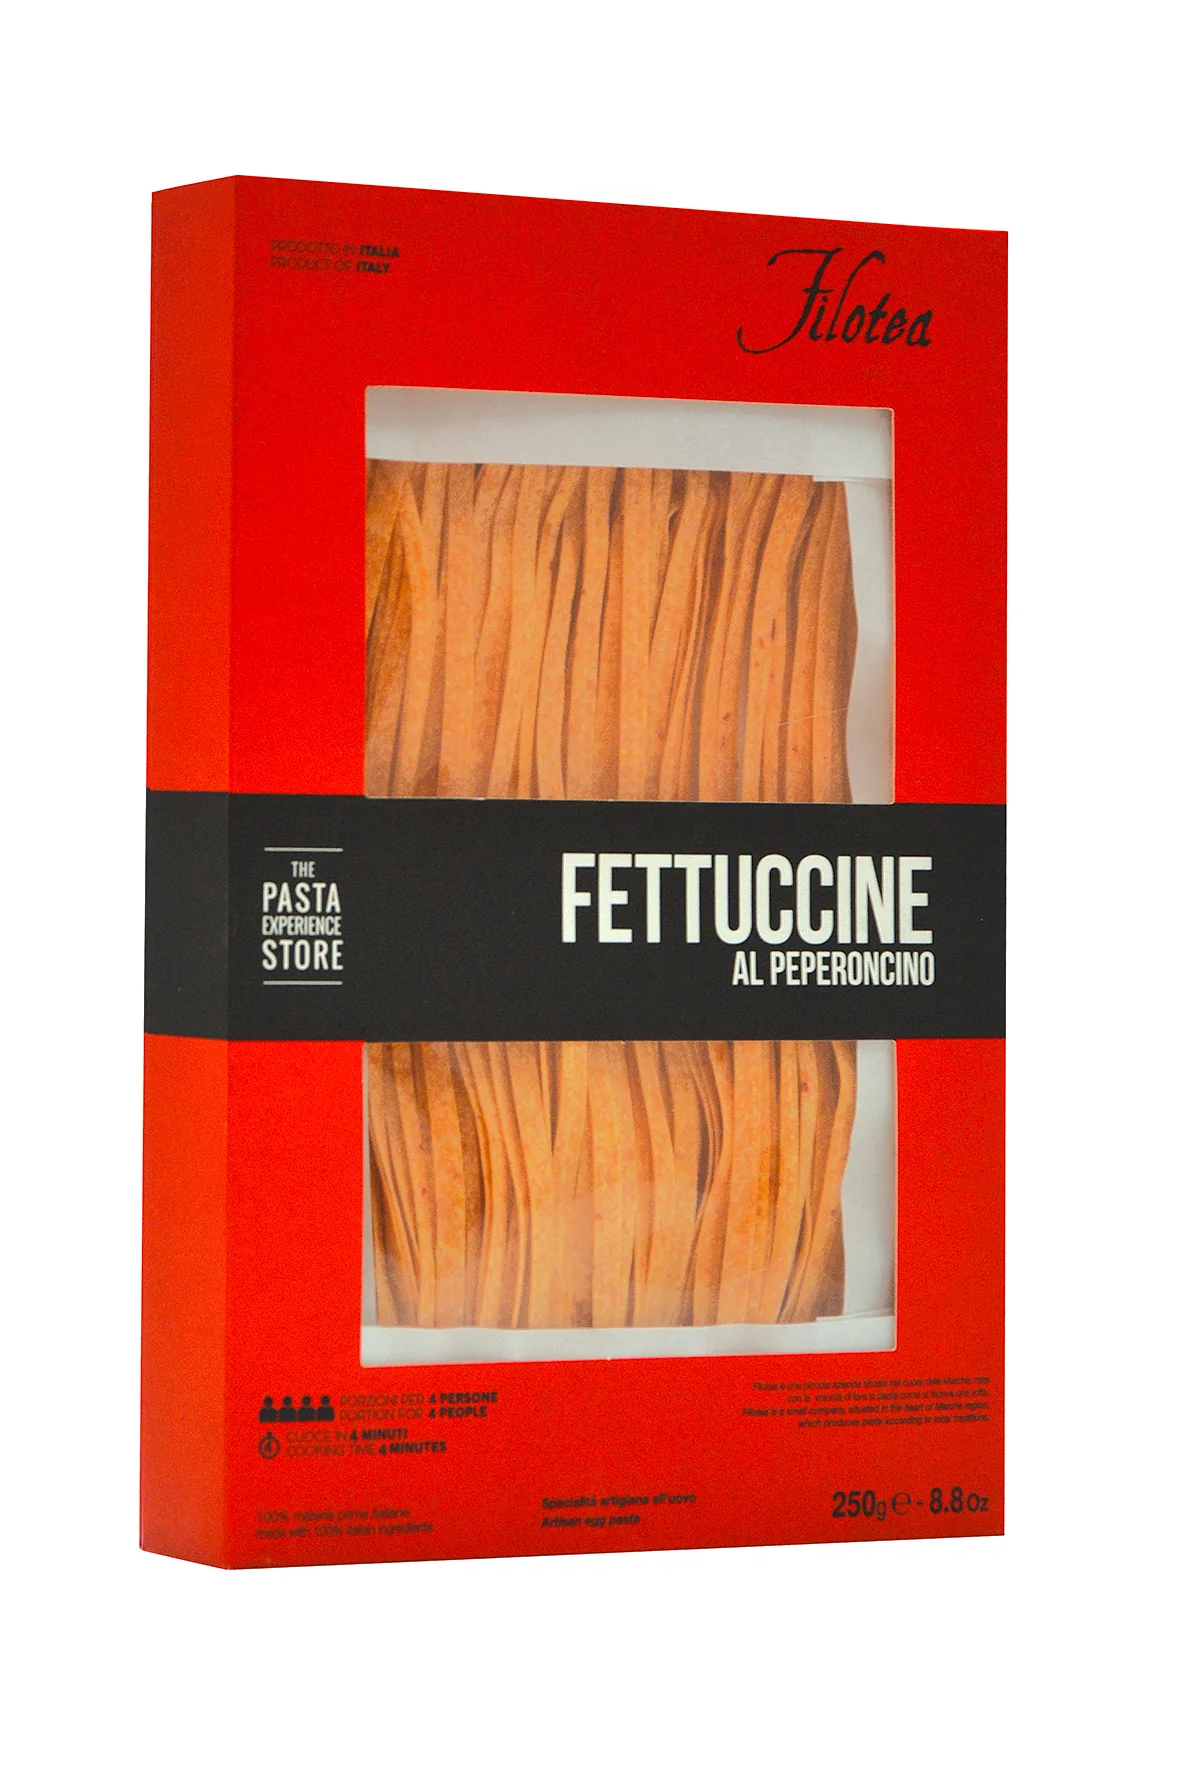 Filotea Fettuccine Al Peperoncino 250g